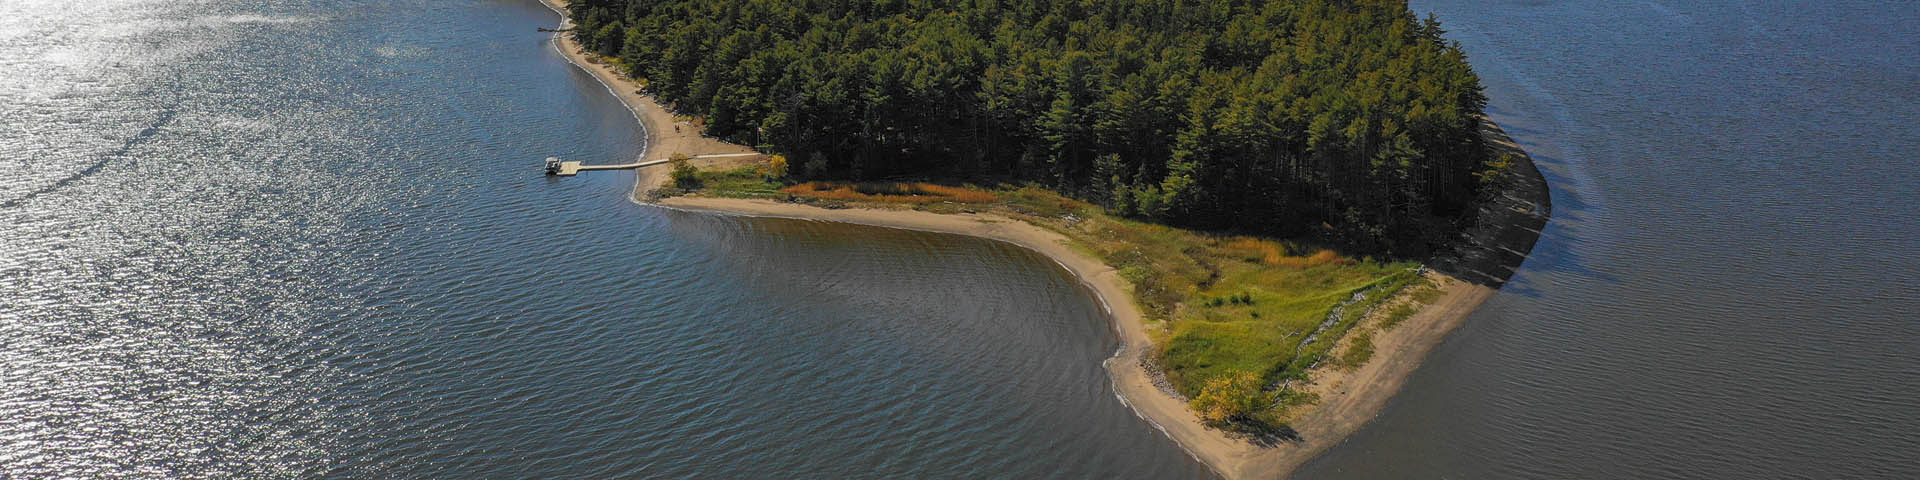 Vue aérienne de l'Île de Beaubears, sur la rivière Miramichi.